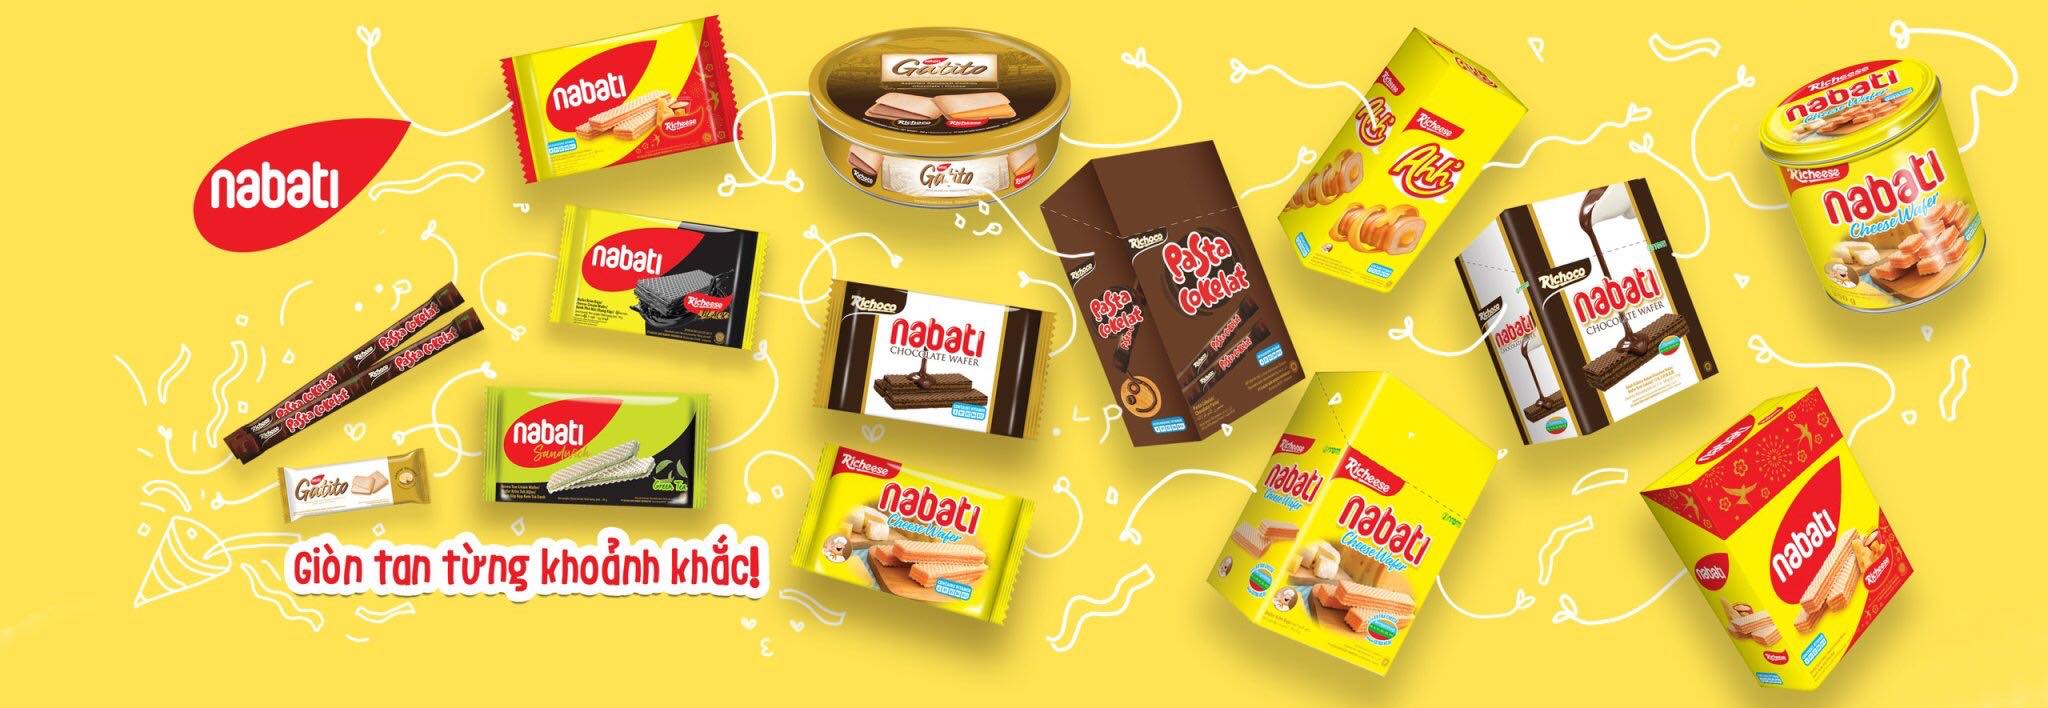 Nabati products